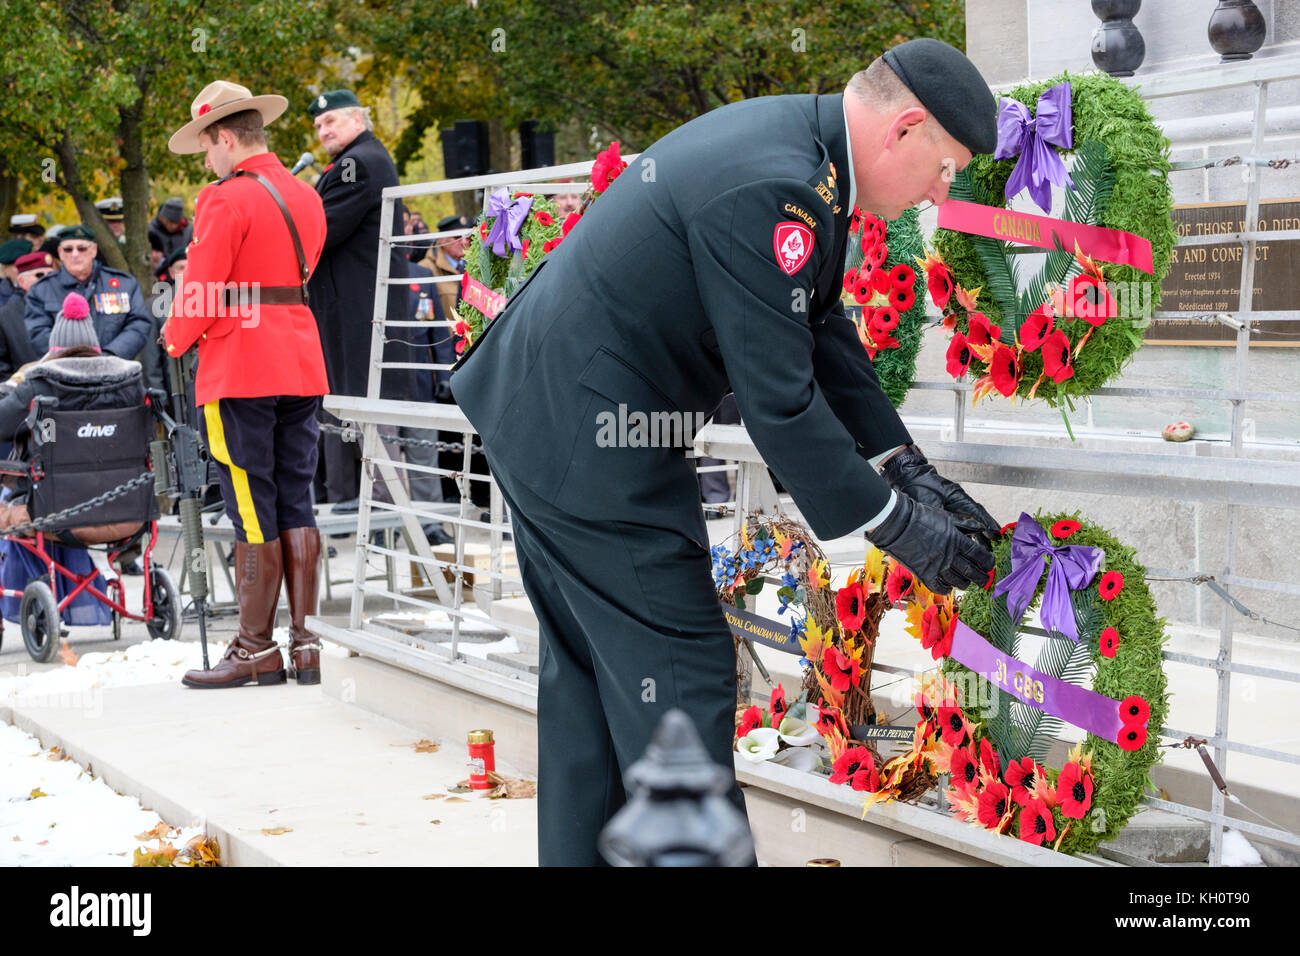 Royal Canadian Regimiento (RCR) oficial establece una amapola corona en el centro de un cenotafio durante la ceremonia del Día del Recuerdo en London, Ontario, Canadá. Foto de stock